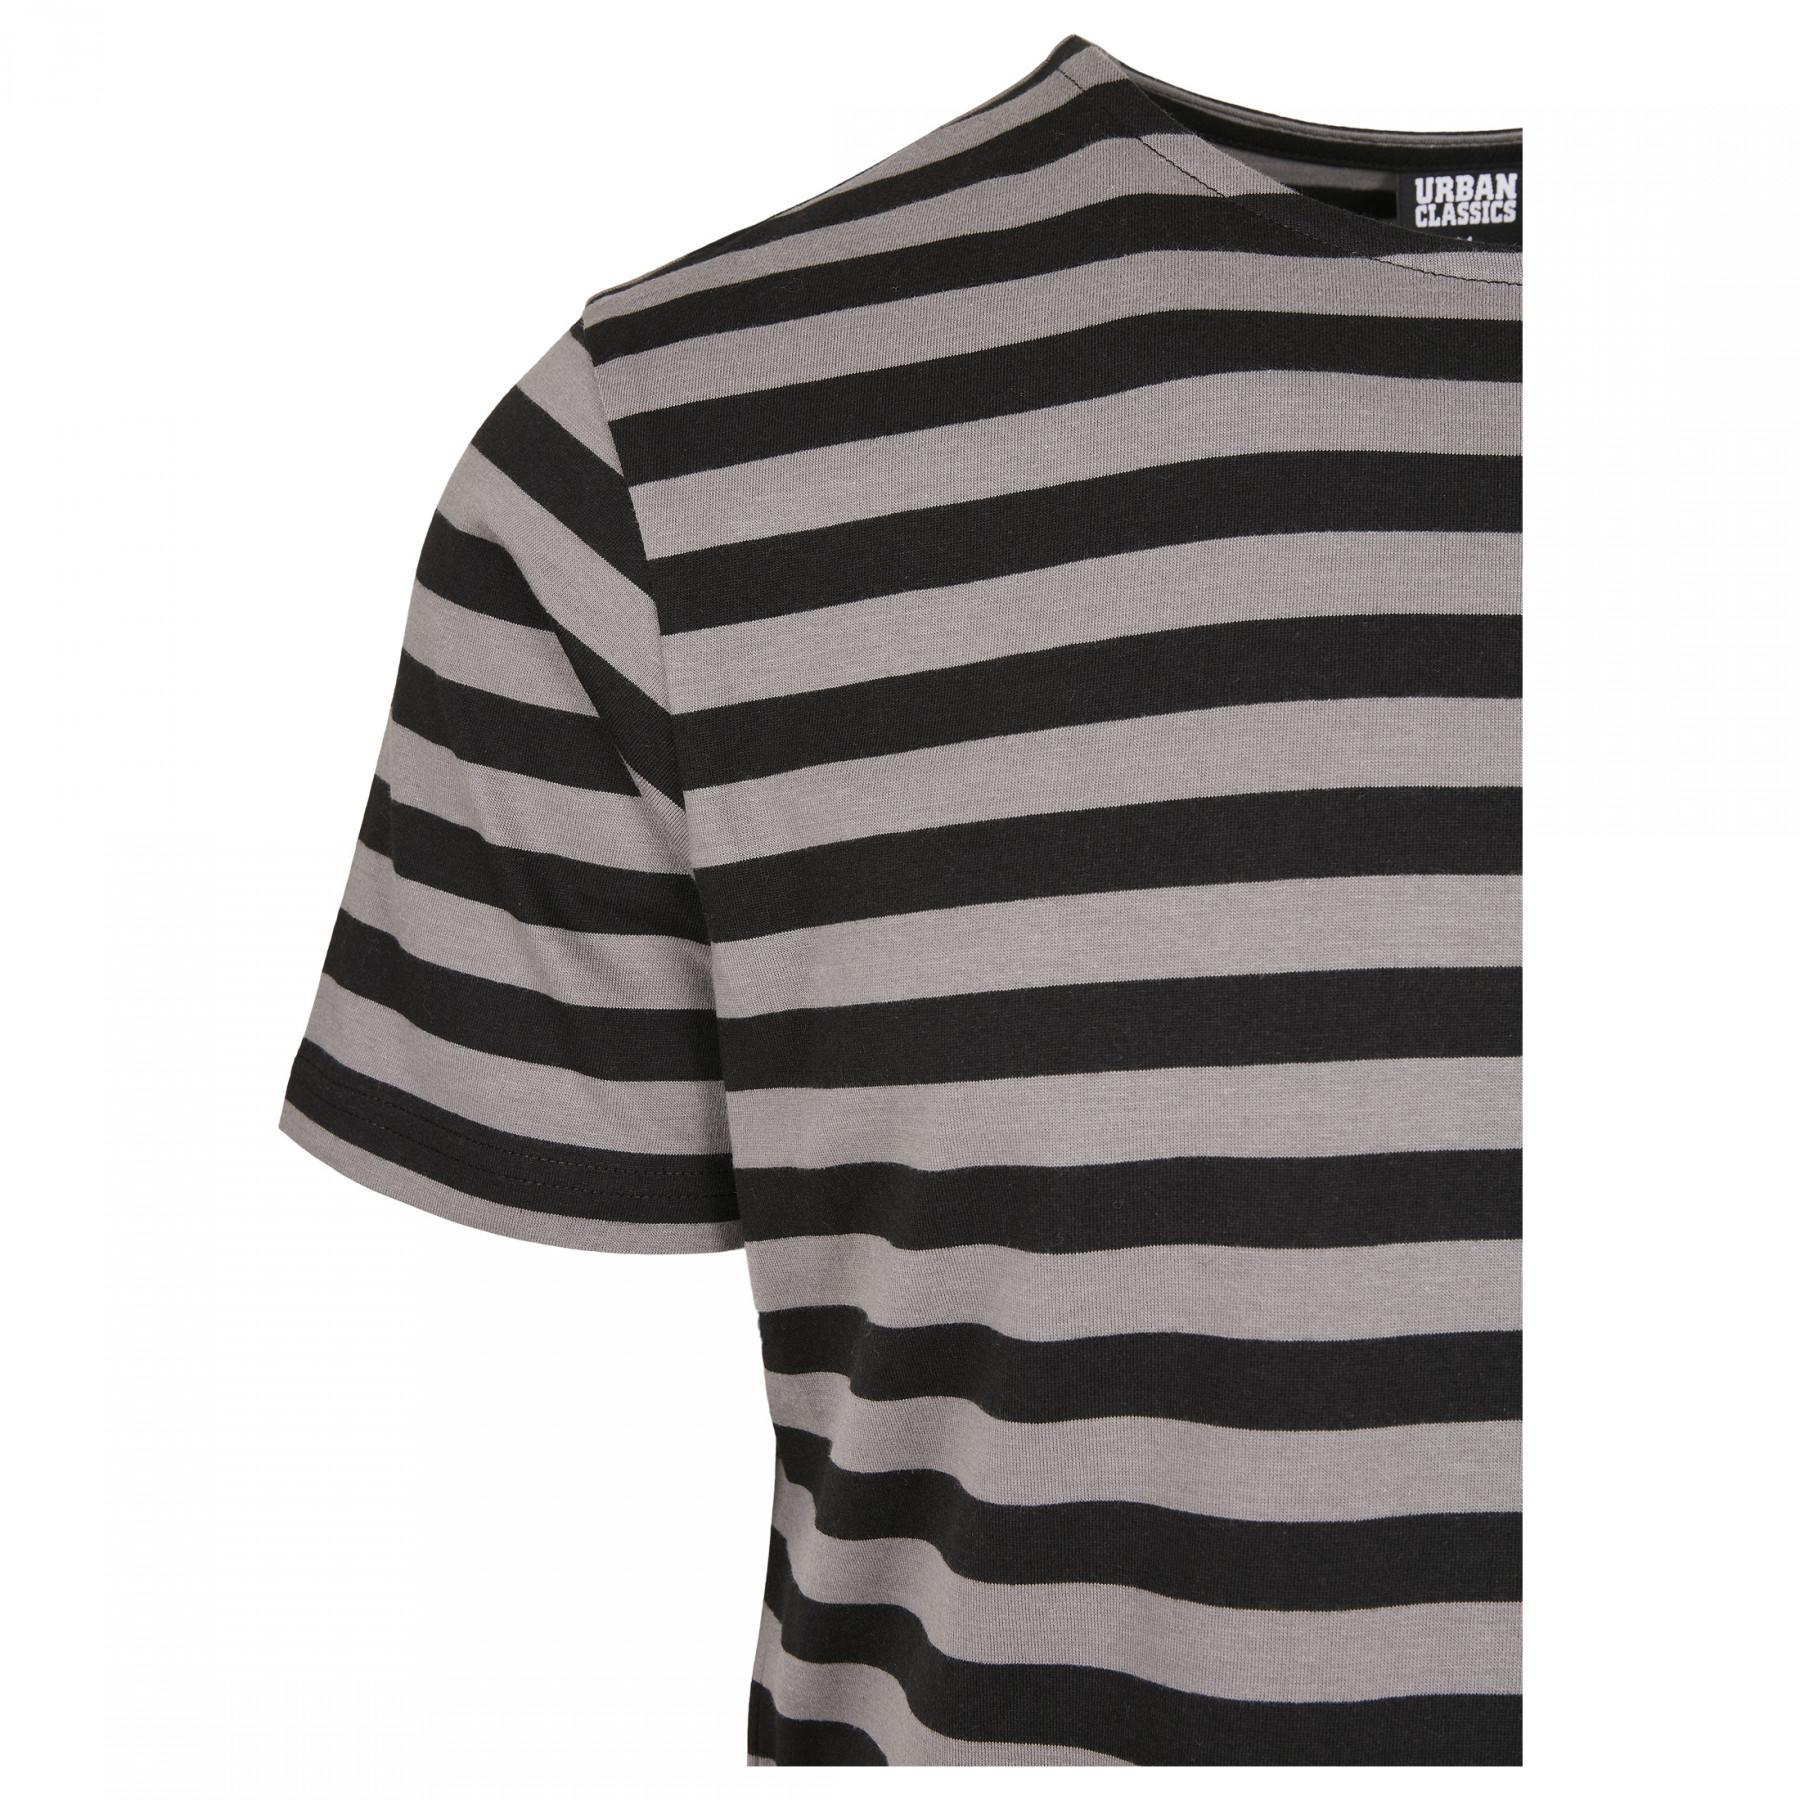 T-shirt Urban Classics stripe